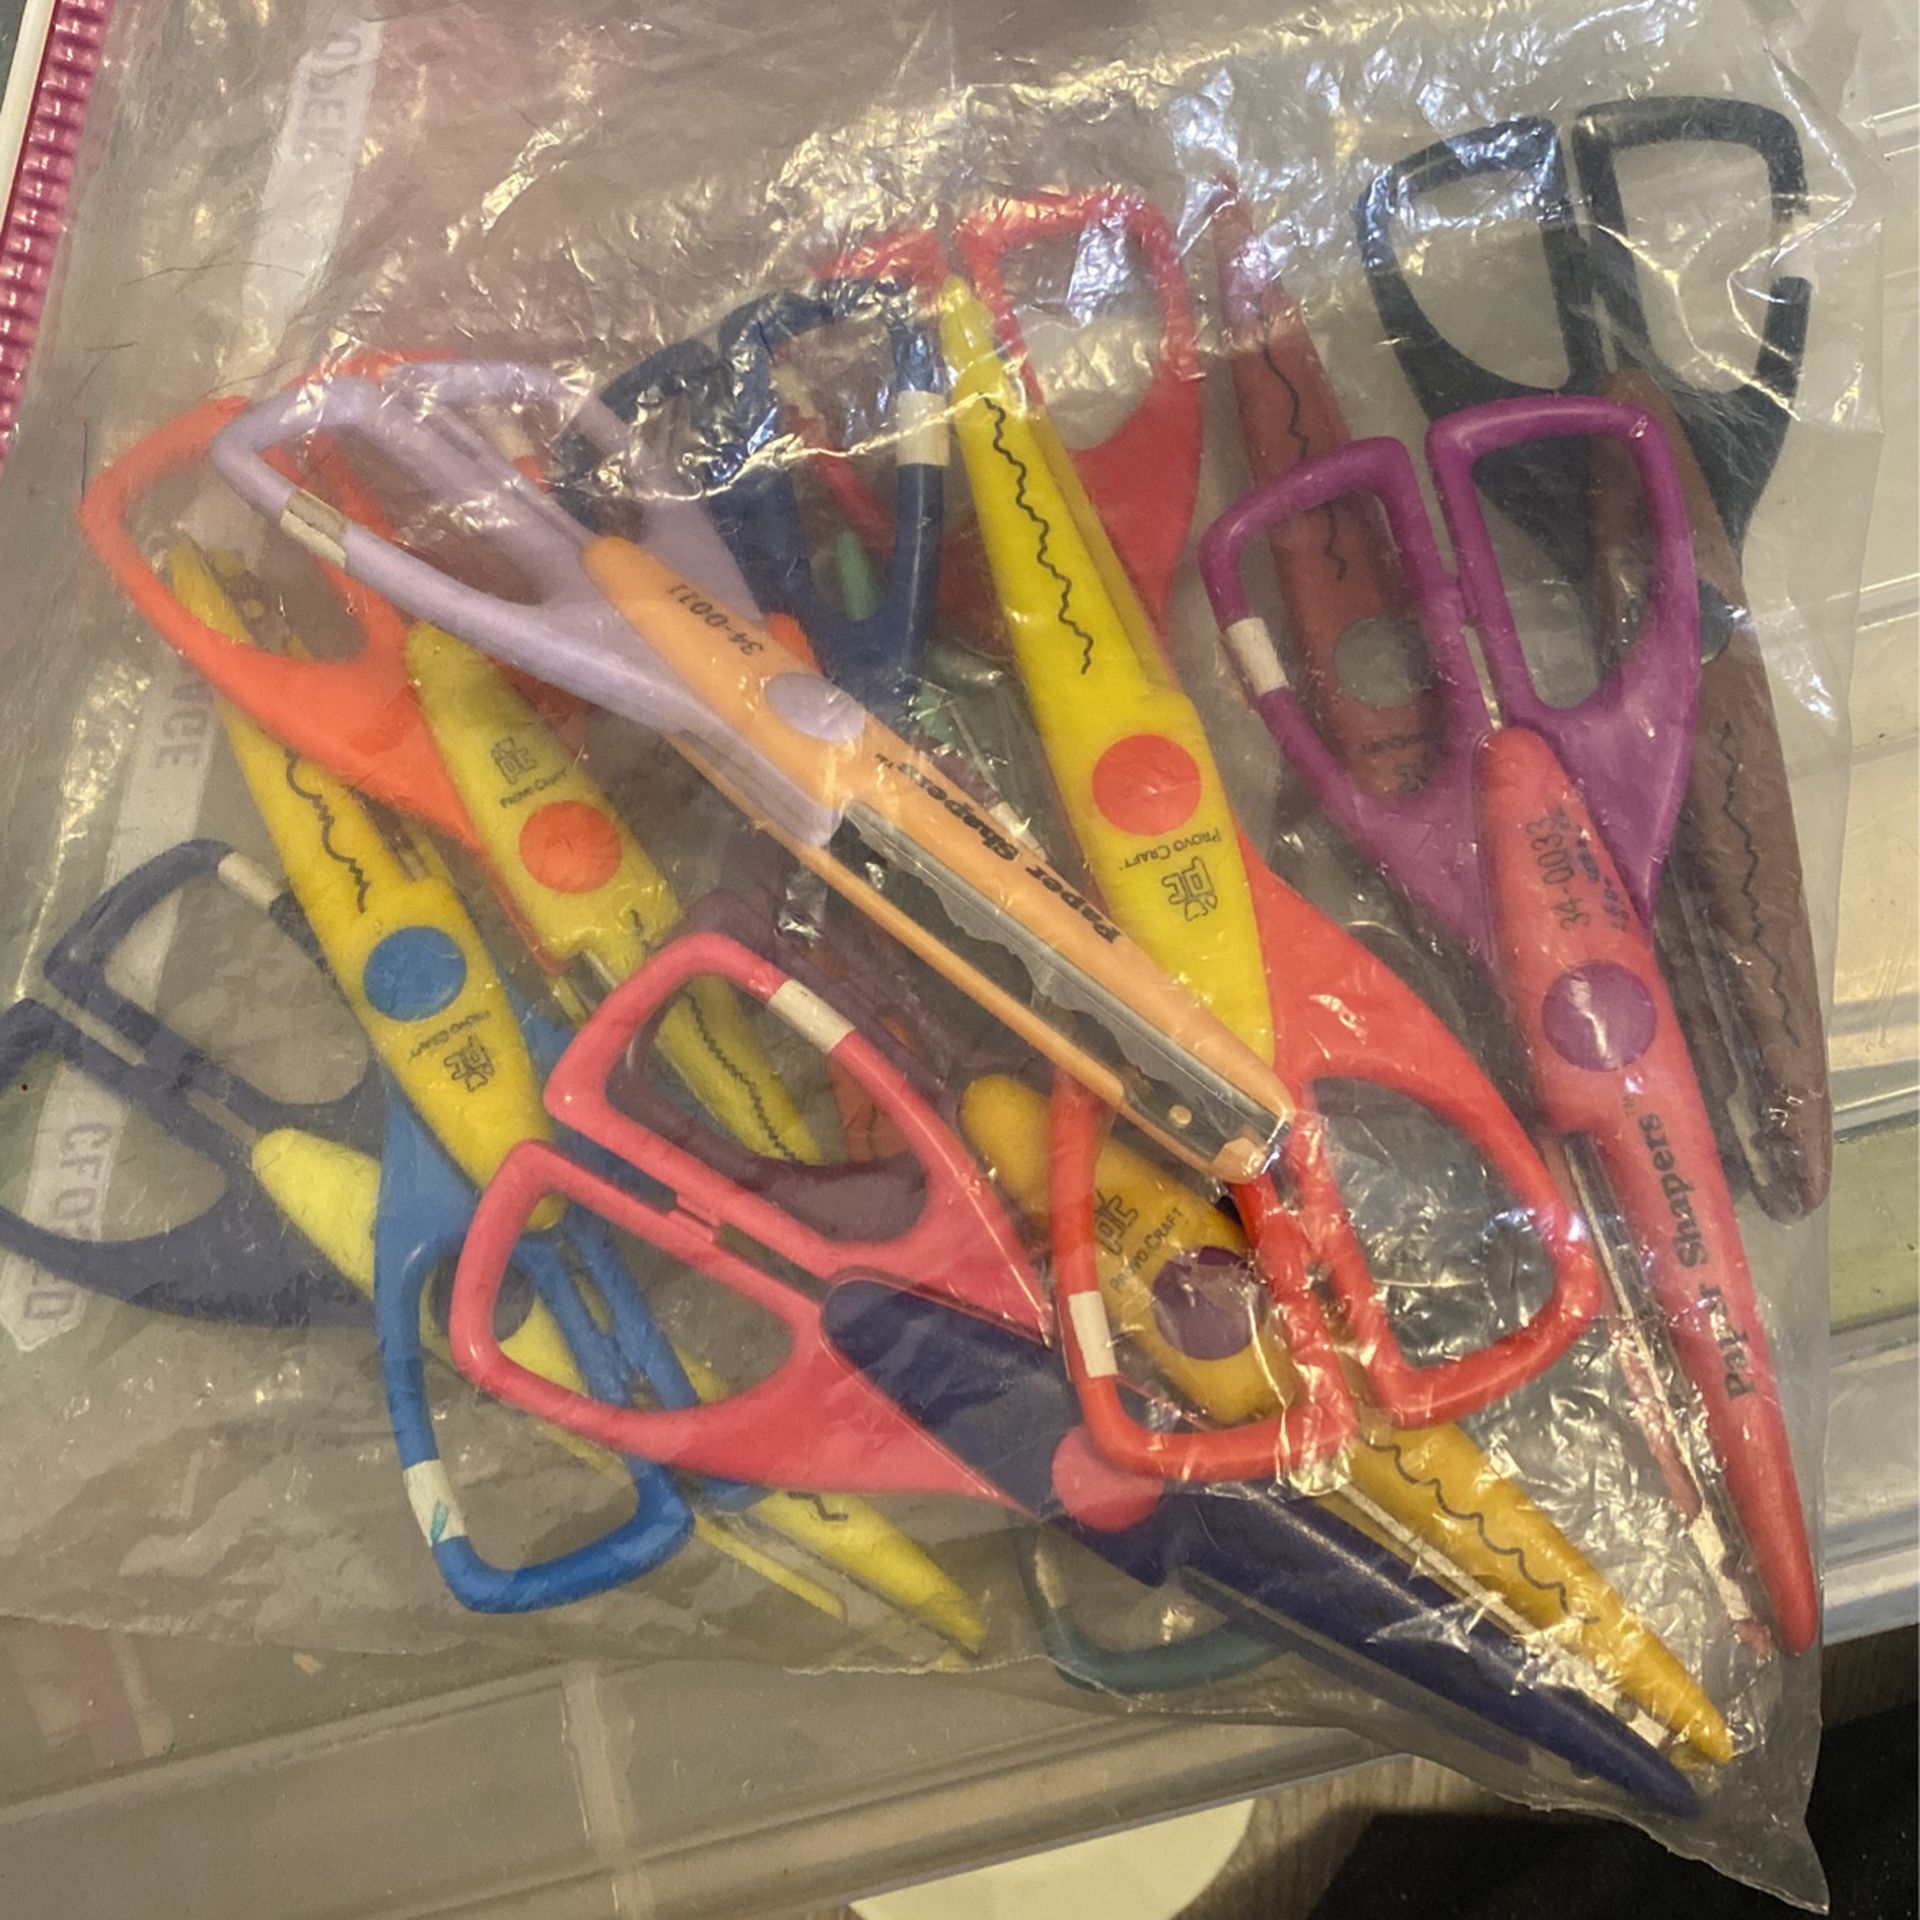 Pack Of Crafting Scissors